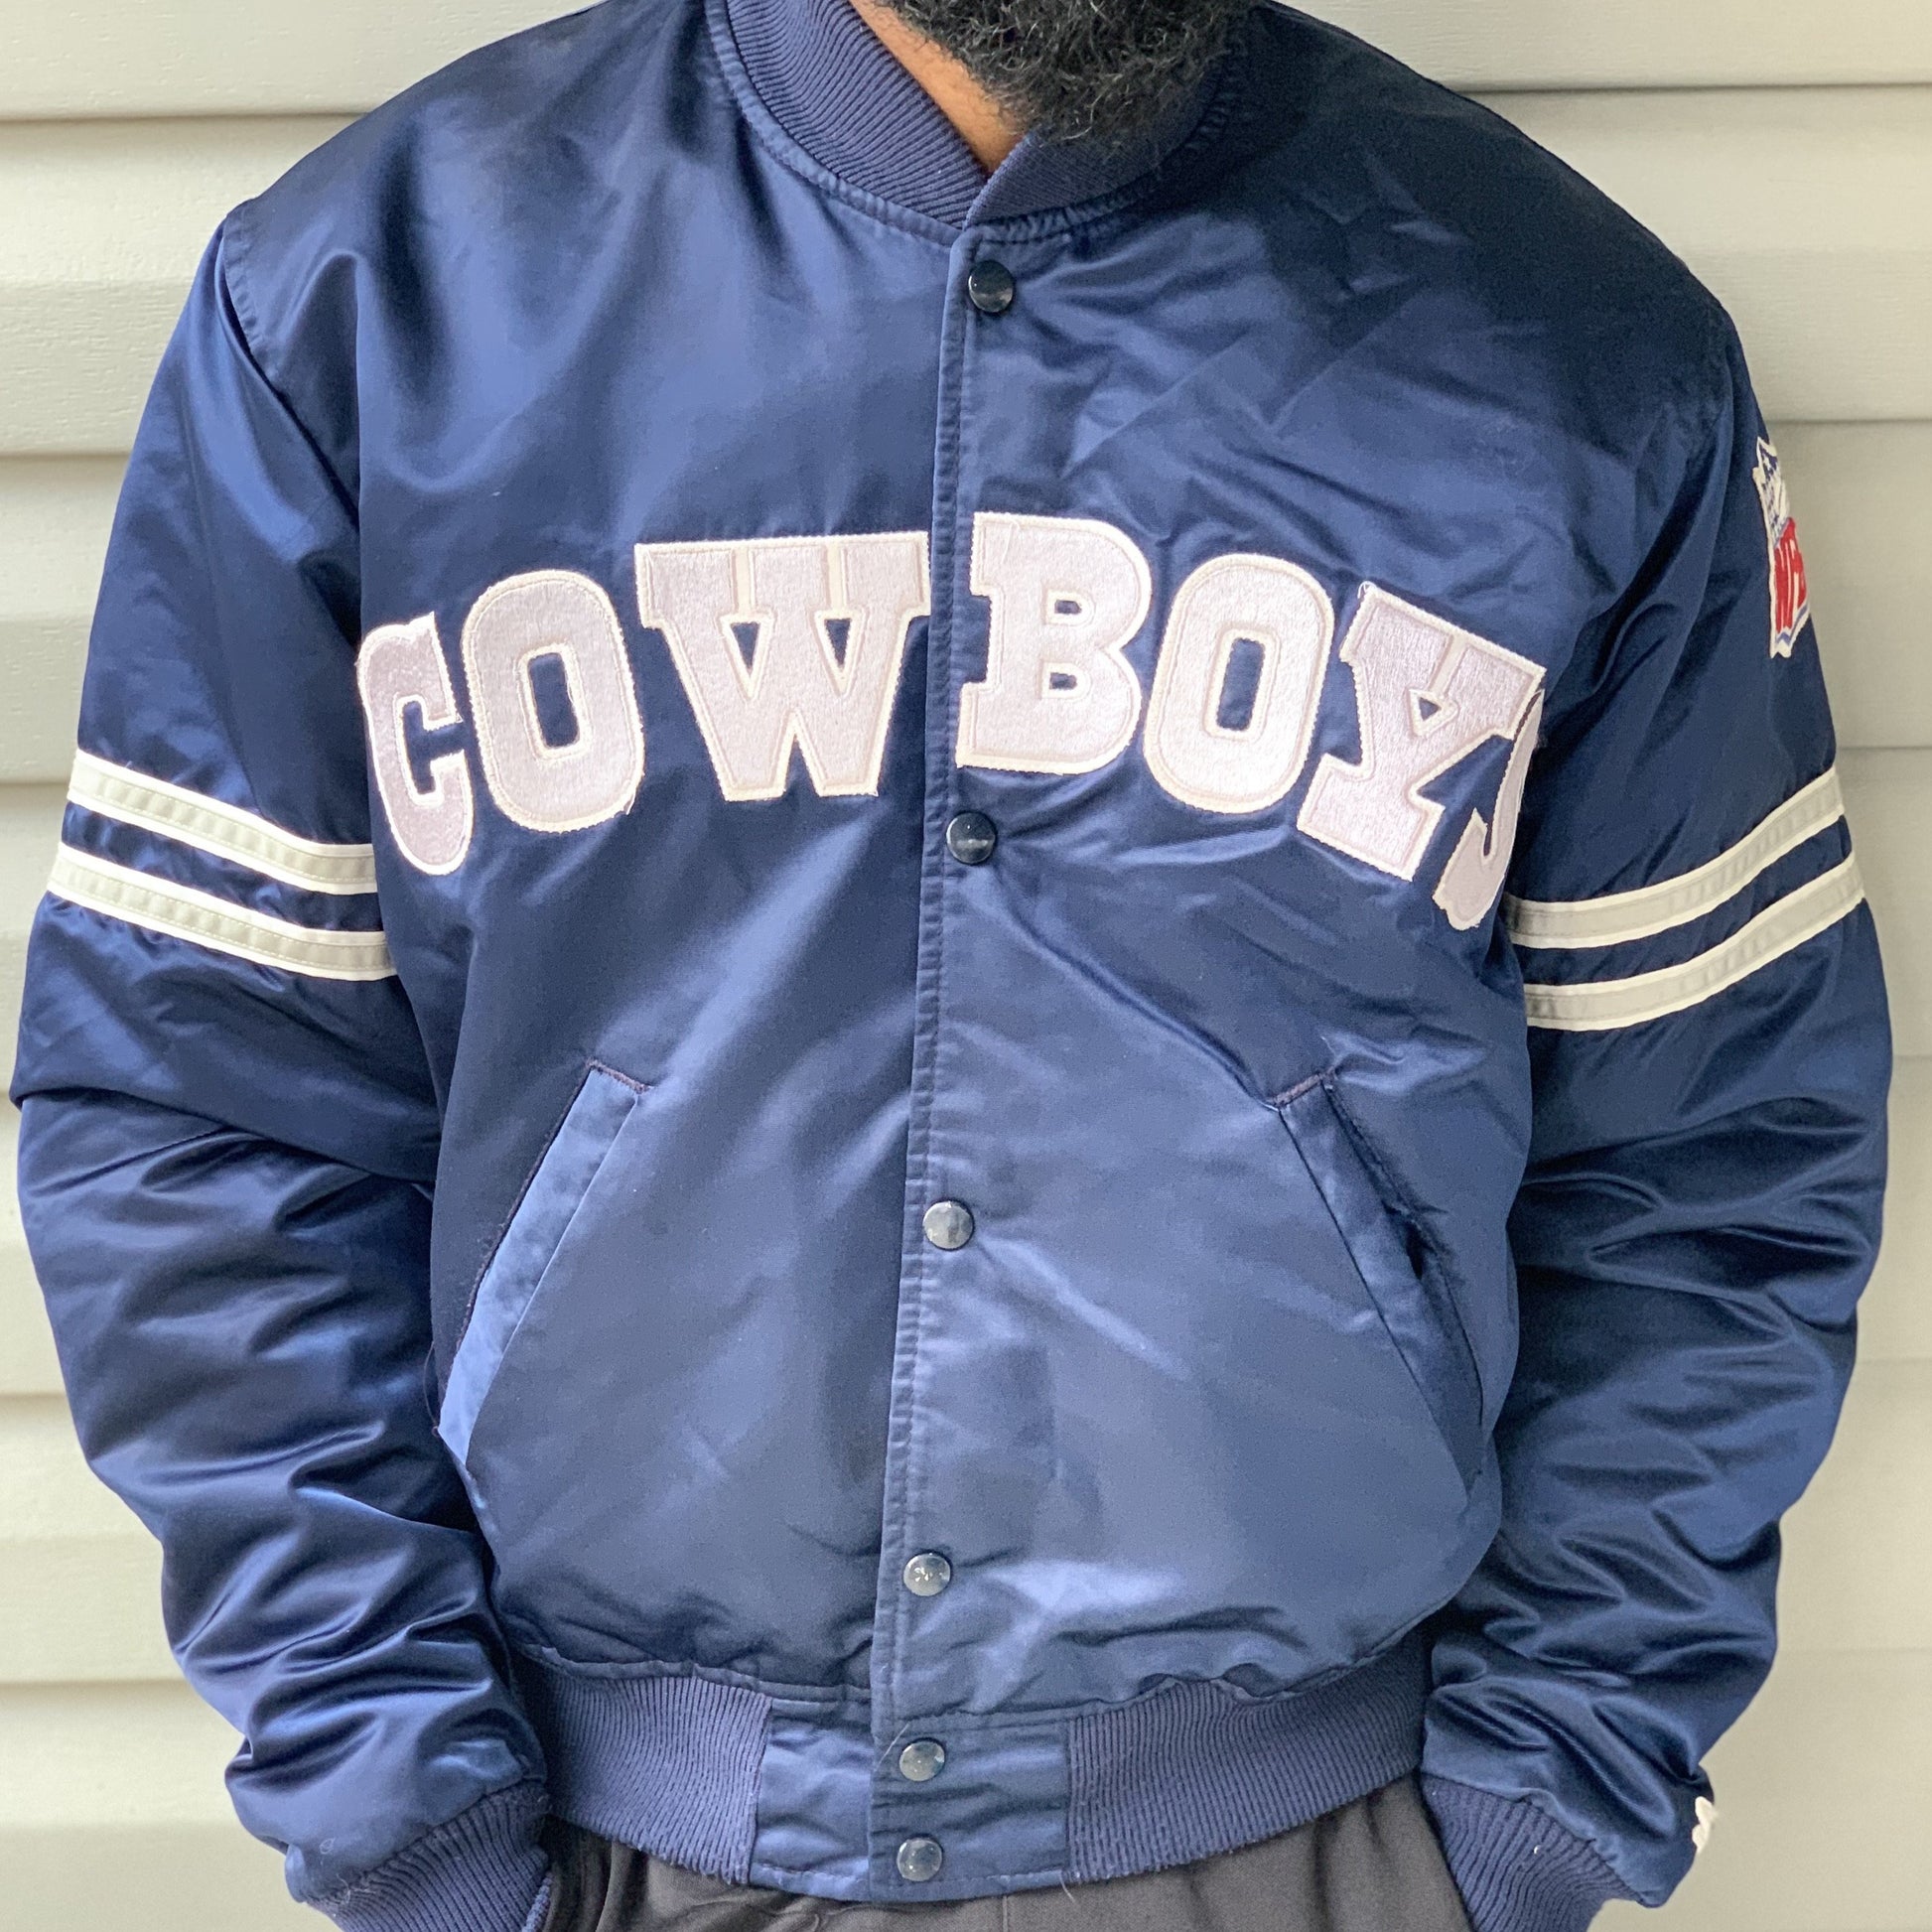 retro cowboys jacket